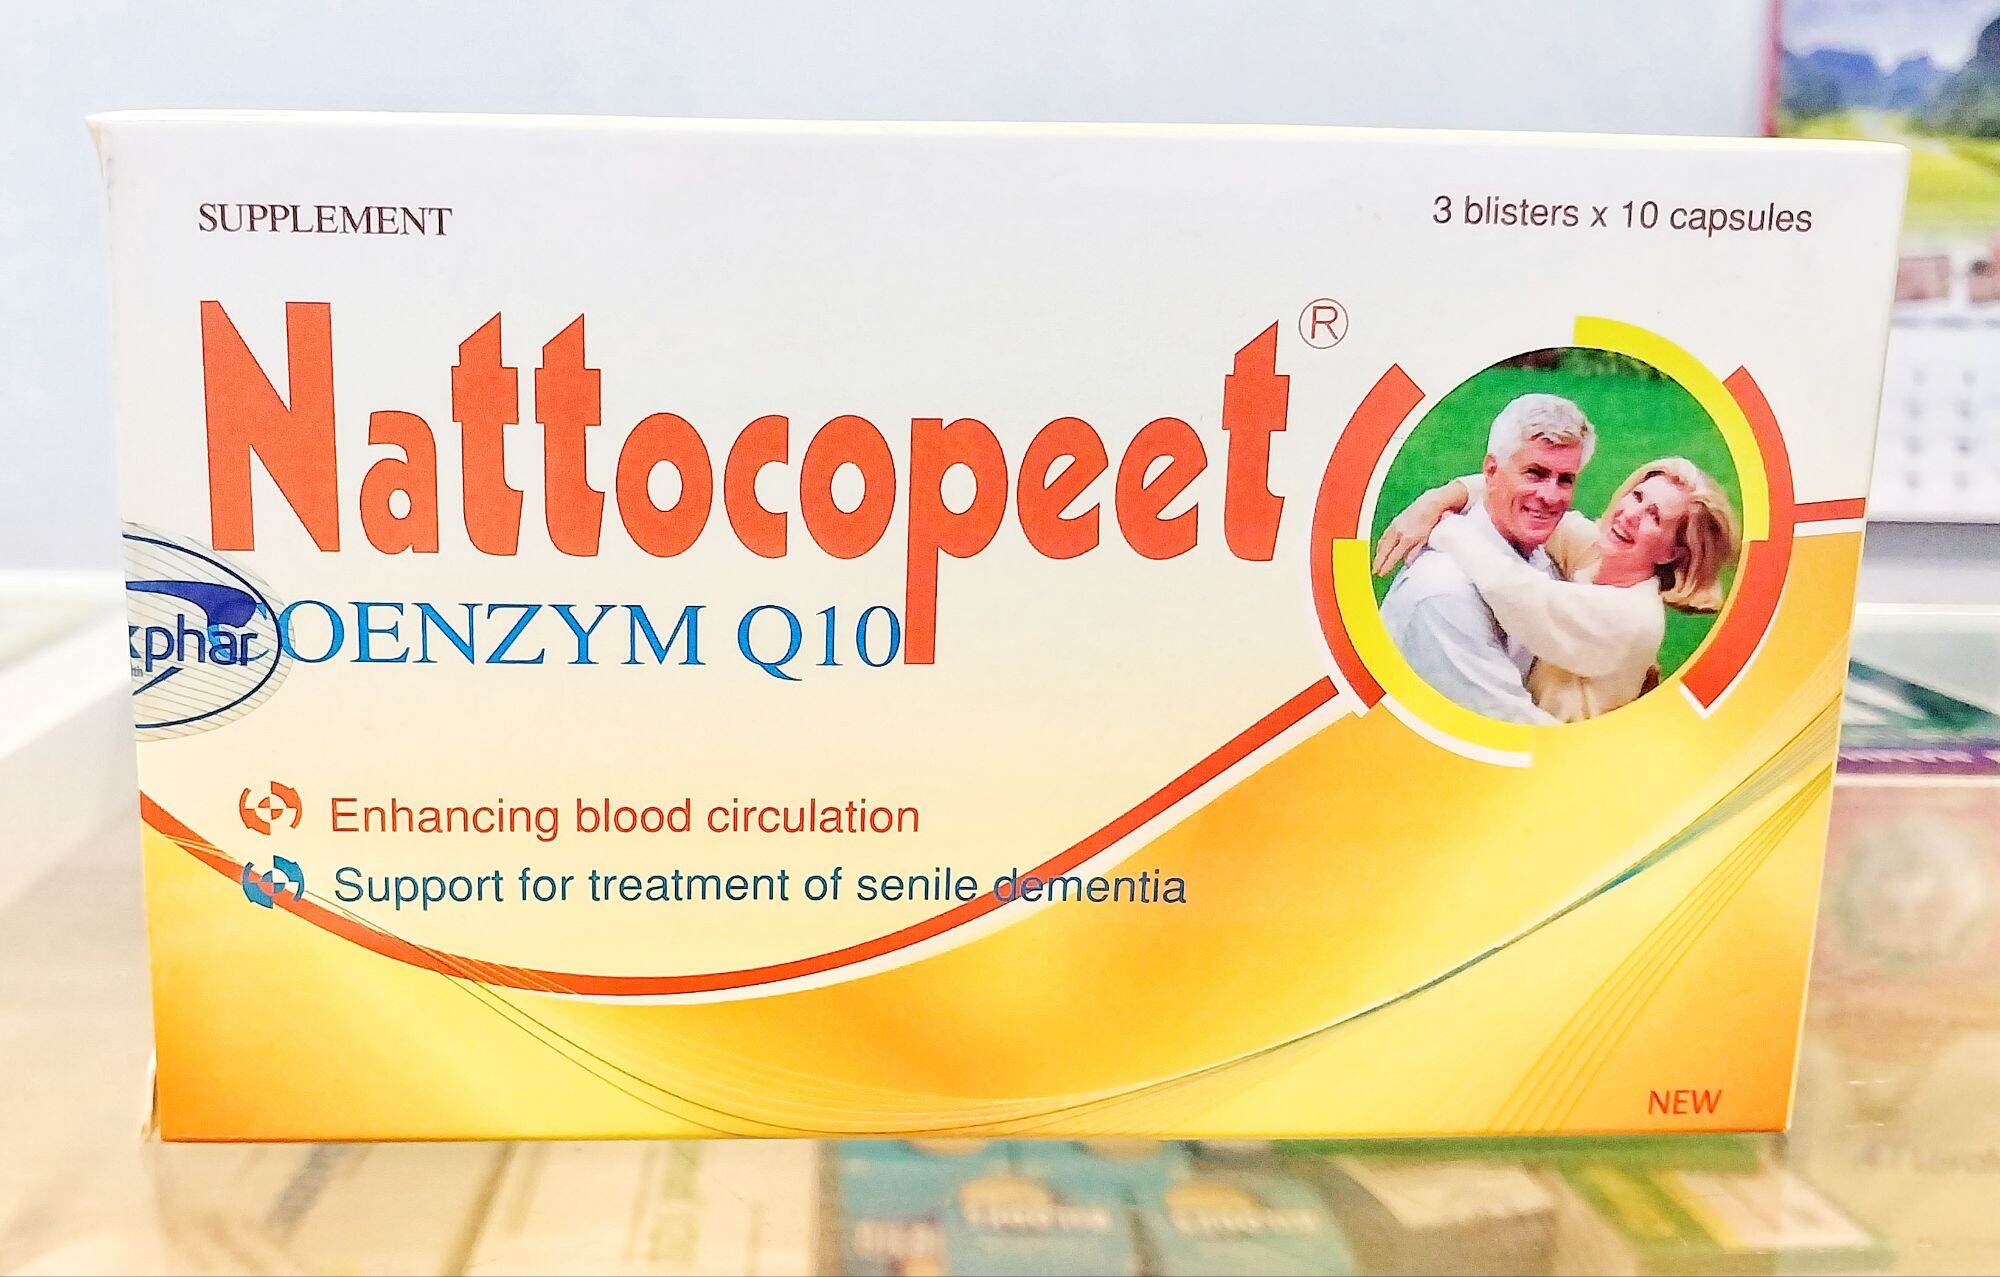 Nattocopeet Dược Đức - Hỗ trợ tăng cường tuần hoàn và lưu thông máu